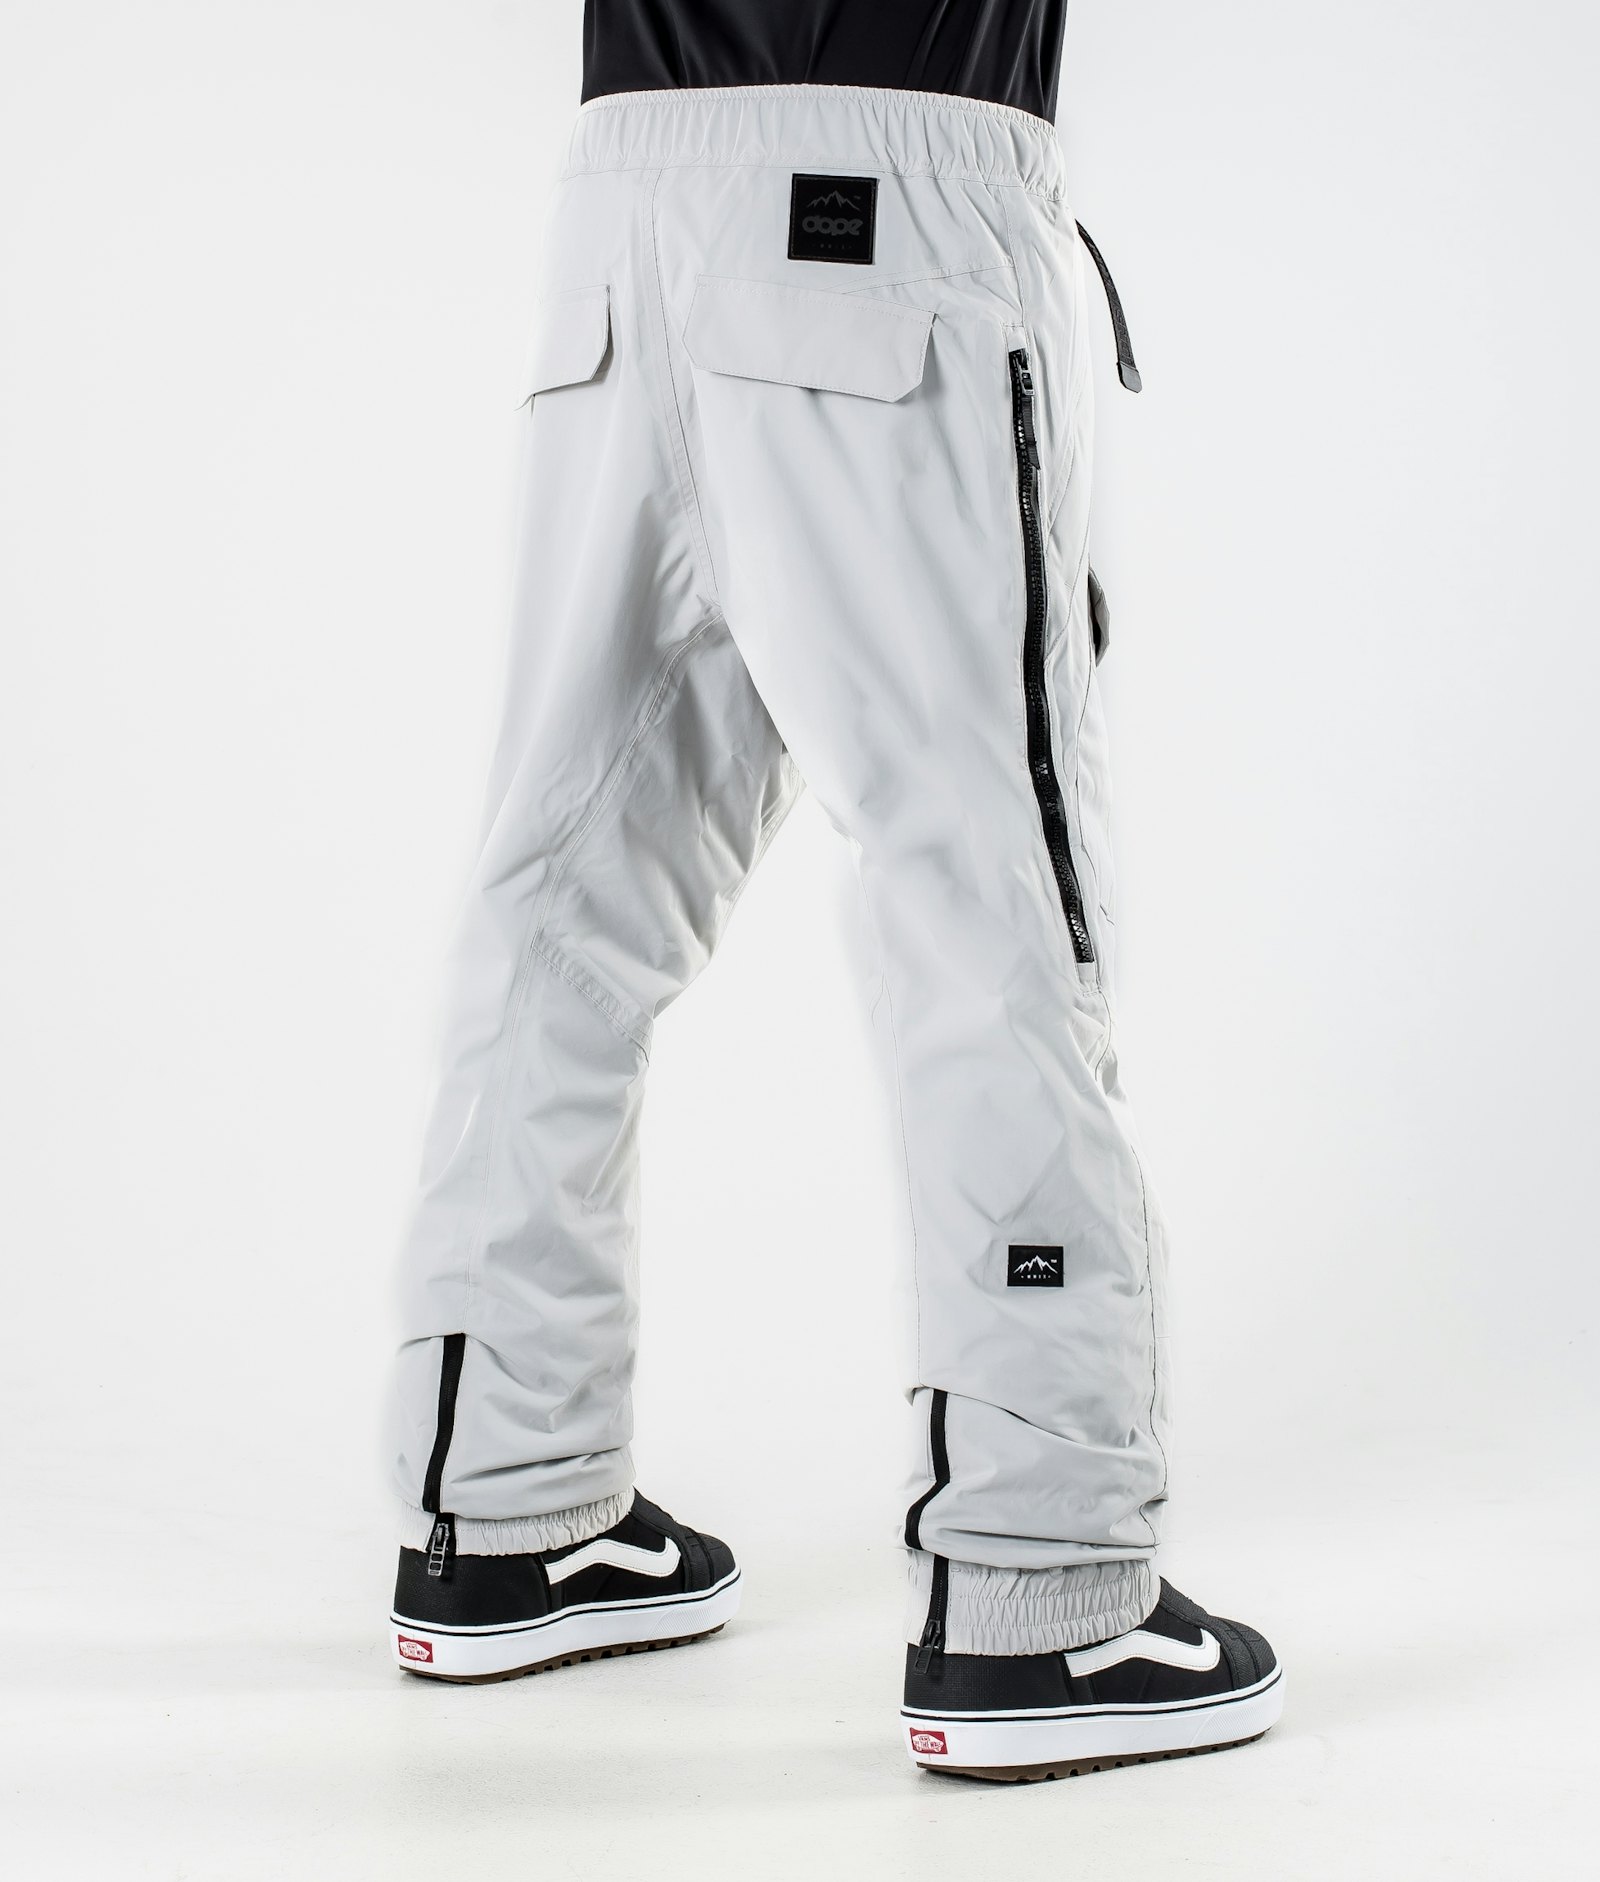 Antek 2020 Spodnie Snowboardowe Mężczyźni Light Grey